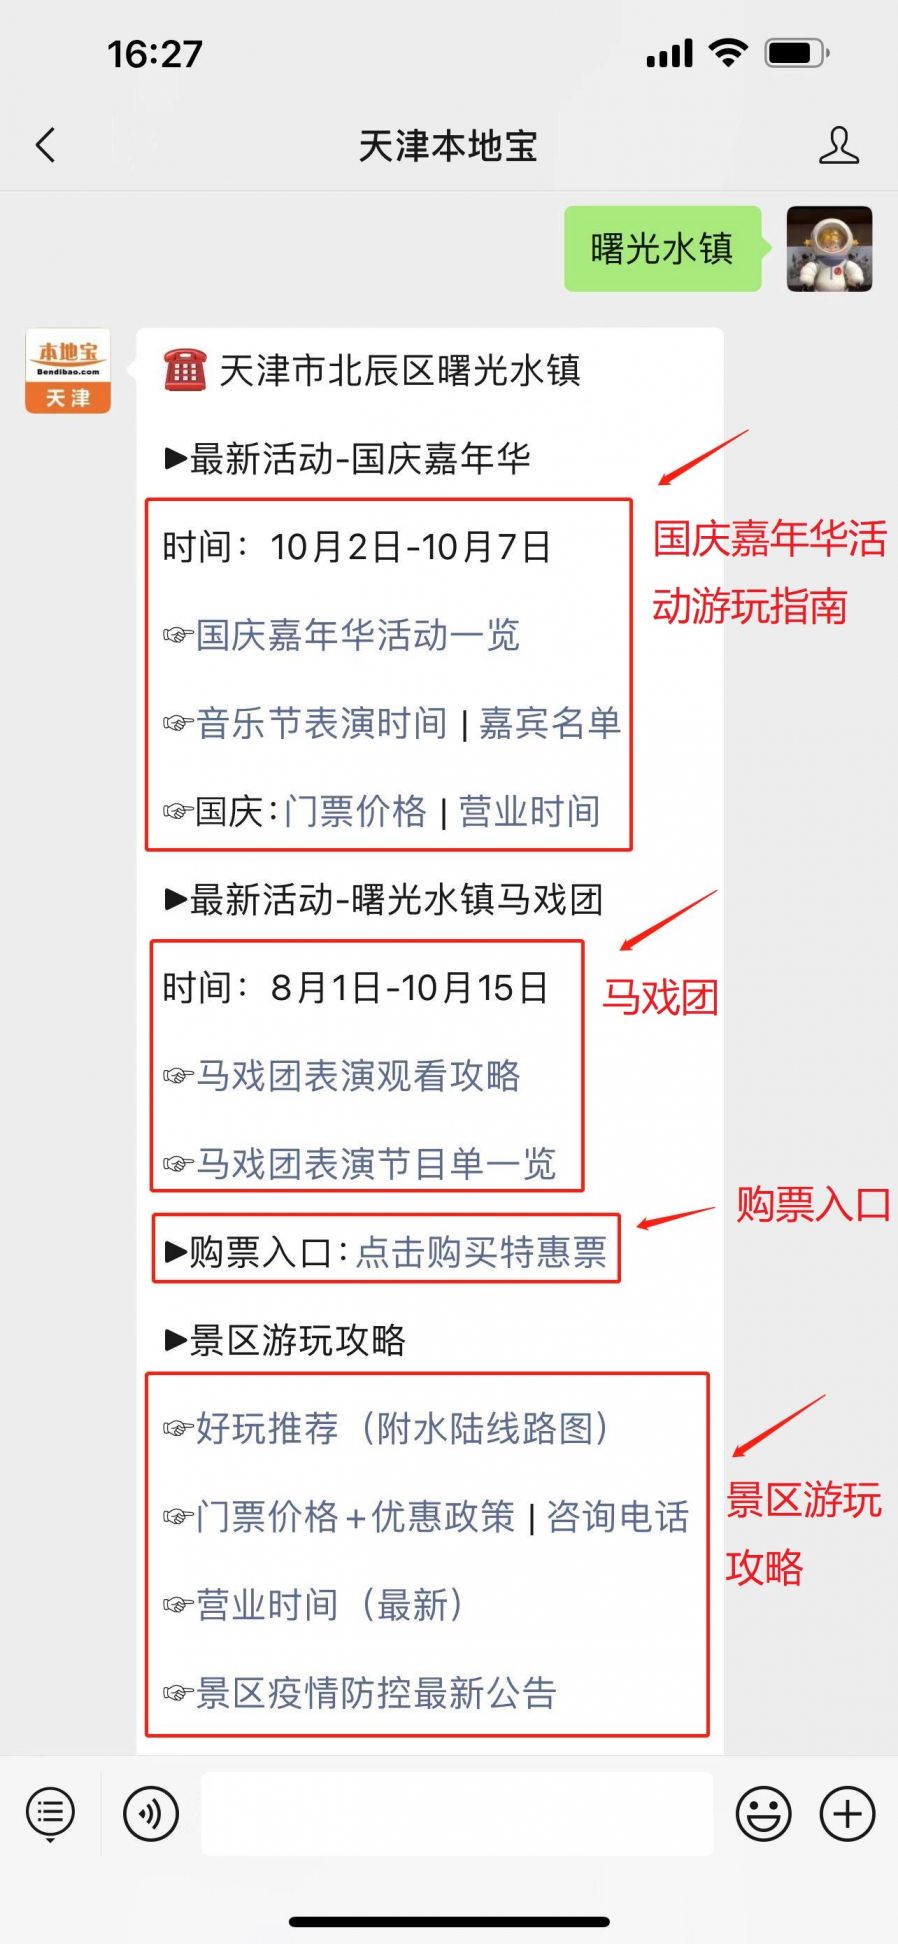 2021天津曙光音乐节全攻略阵容地点时间